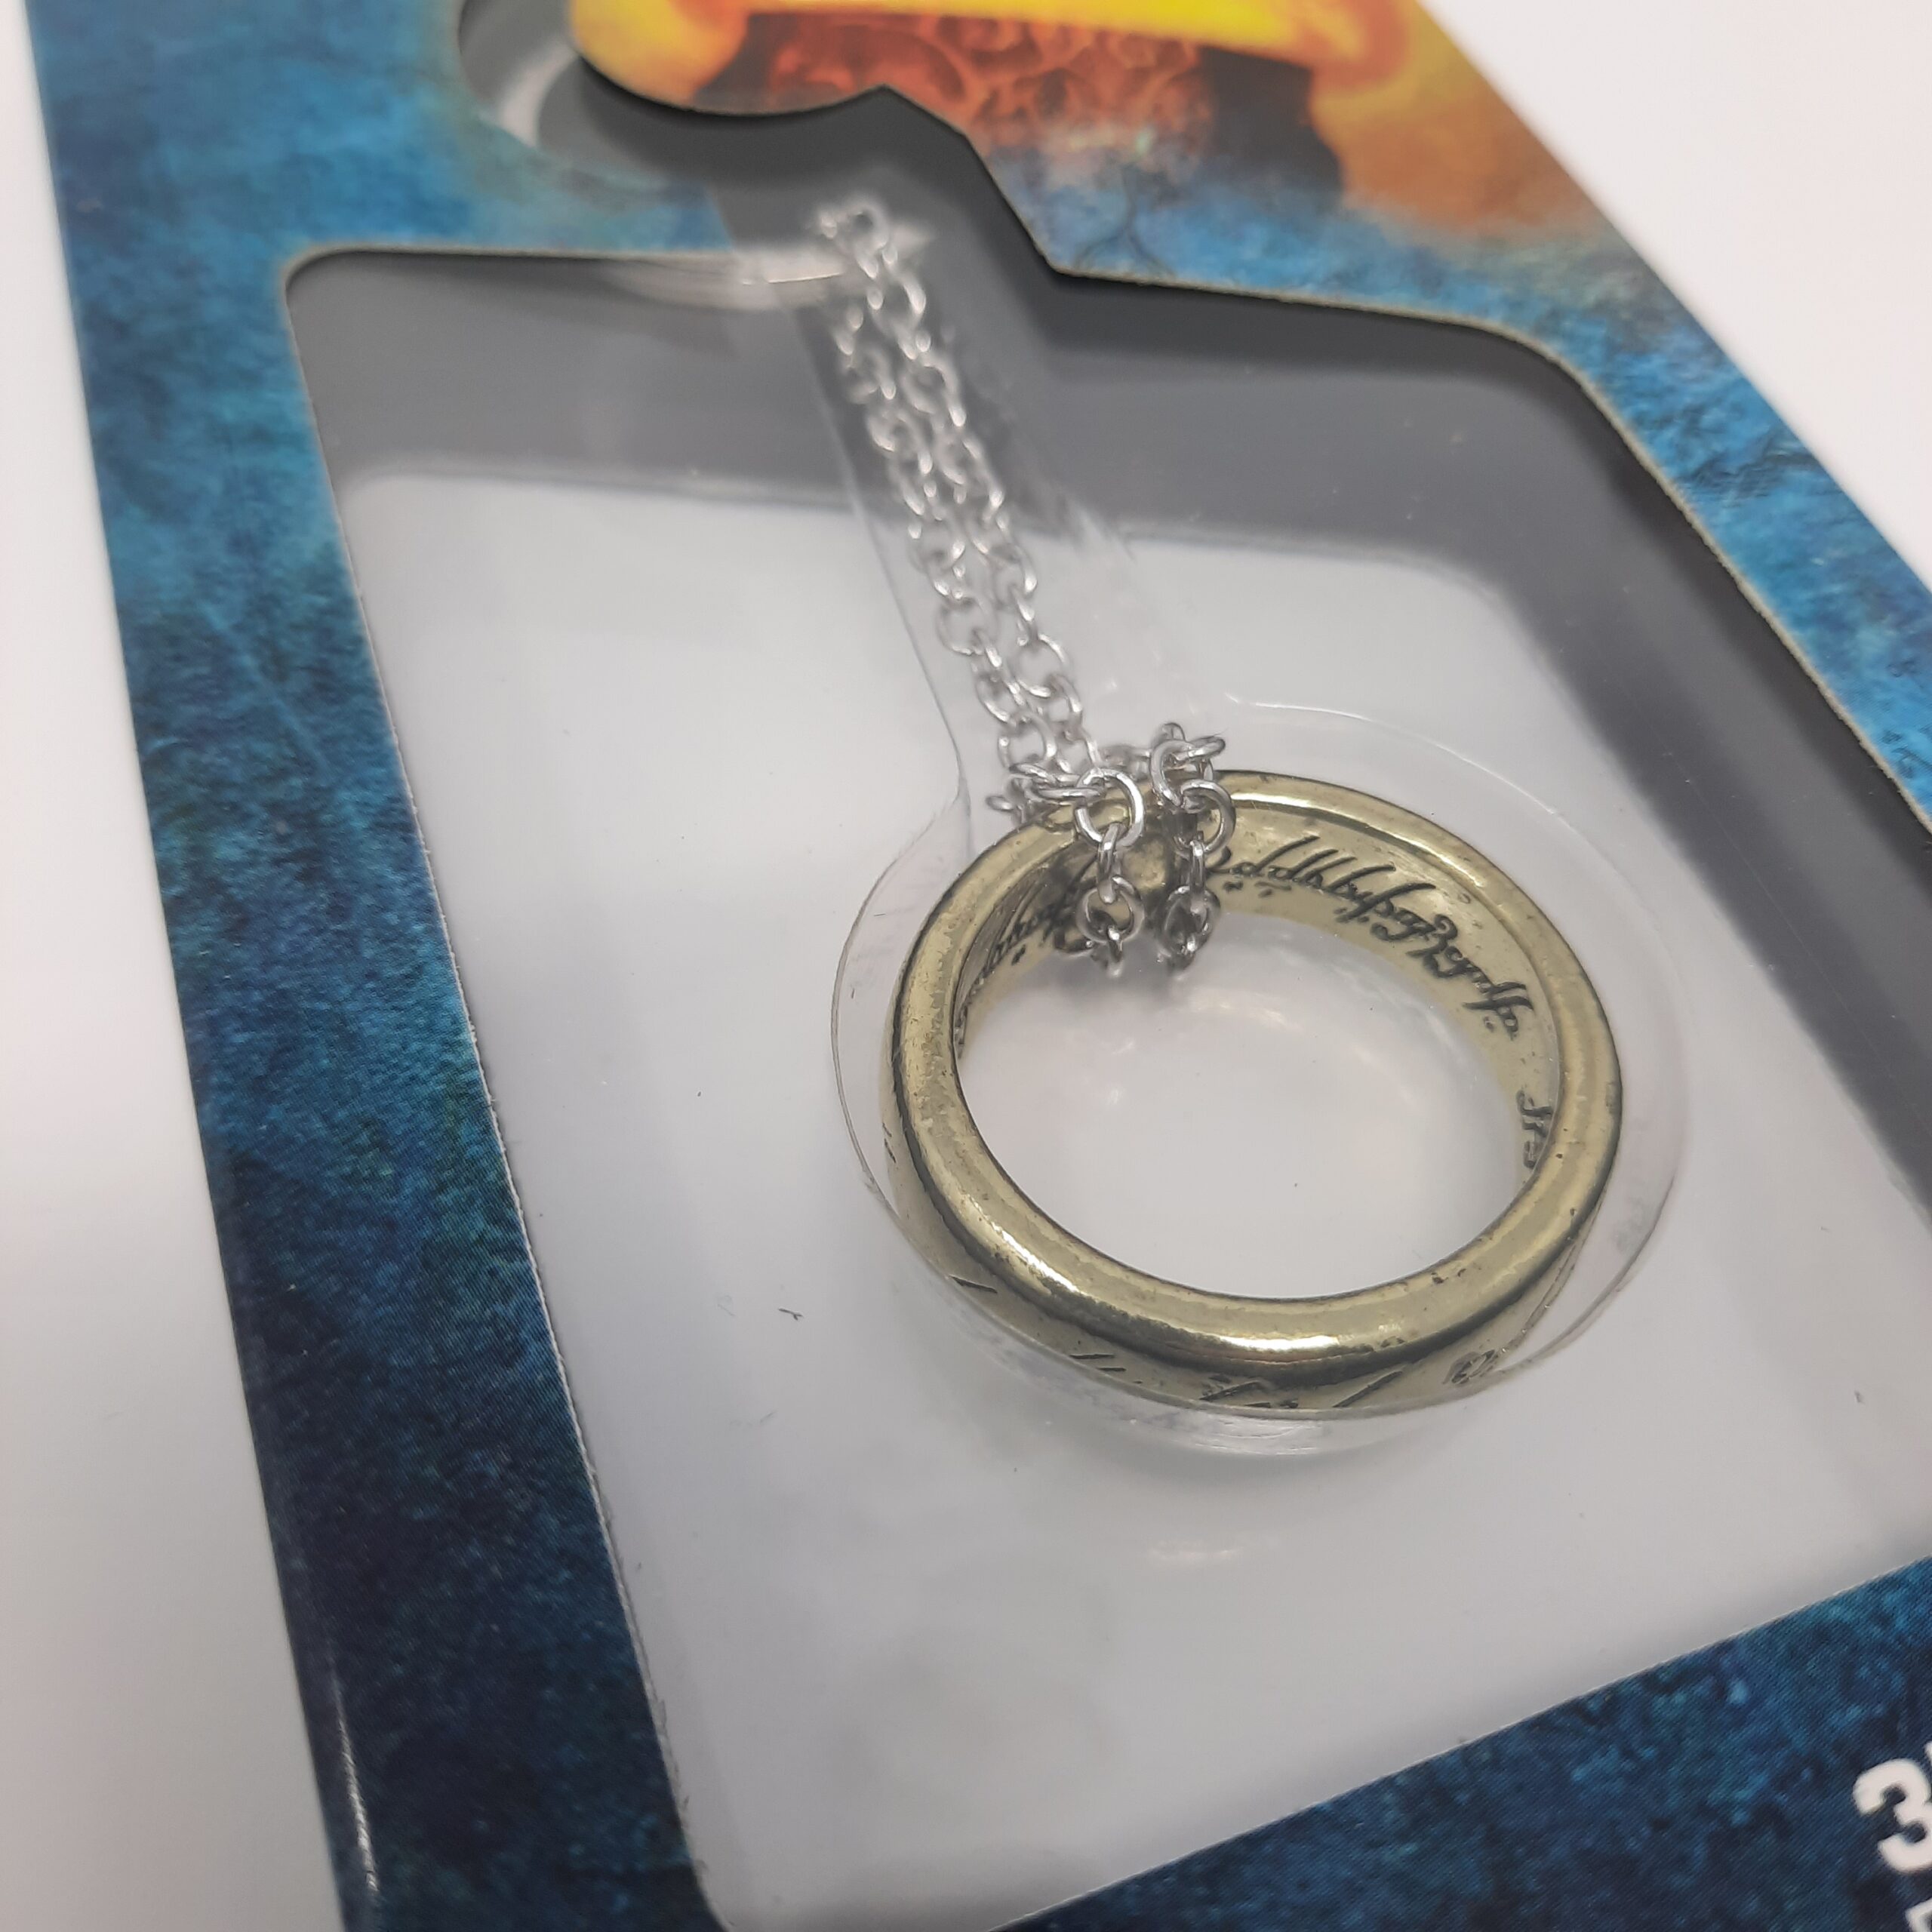 HERR DER RINGE – Merchandise – Anime Gaming Schlüsselanhänger “Ring” – und Figuren Nerdmagnet 3D